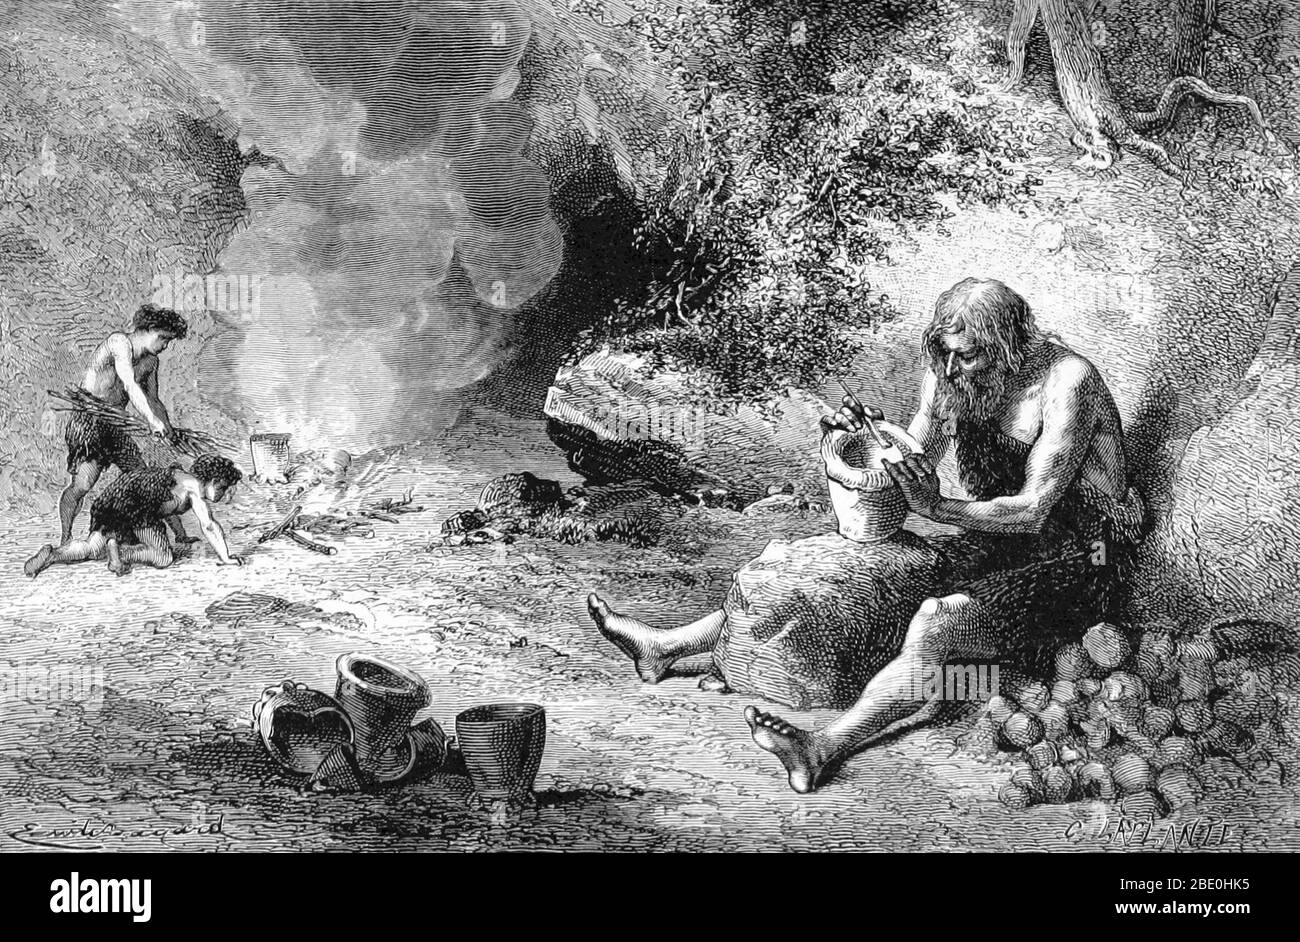 Une grande partie de l'histoire de la poterie est préhistorique, une partie des cultures pré-littérales passées. Par conséquent, une grande partie de cette histoire ne peut être trouvée que parmi les artefacts d'archéologie. Parce que la poterie est si durable, la poterie et les merds de la poterie survivent de millénaires sur les sites archéologiques. Les premières formes de poterie ont été faites à partir d'argiles qui ont été tirées à basse température dans les feux de fosse ou dans les feux de bonfeu ouverts. Ils étaient formés à la main et non décorés. Comme la forme de biscuit de la faïence est poreuse, elle a un utilité limitée pour le stockage des liquides. Cependant, la faïence a une histoire continue de la N Banque D'Images